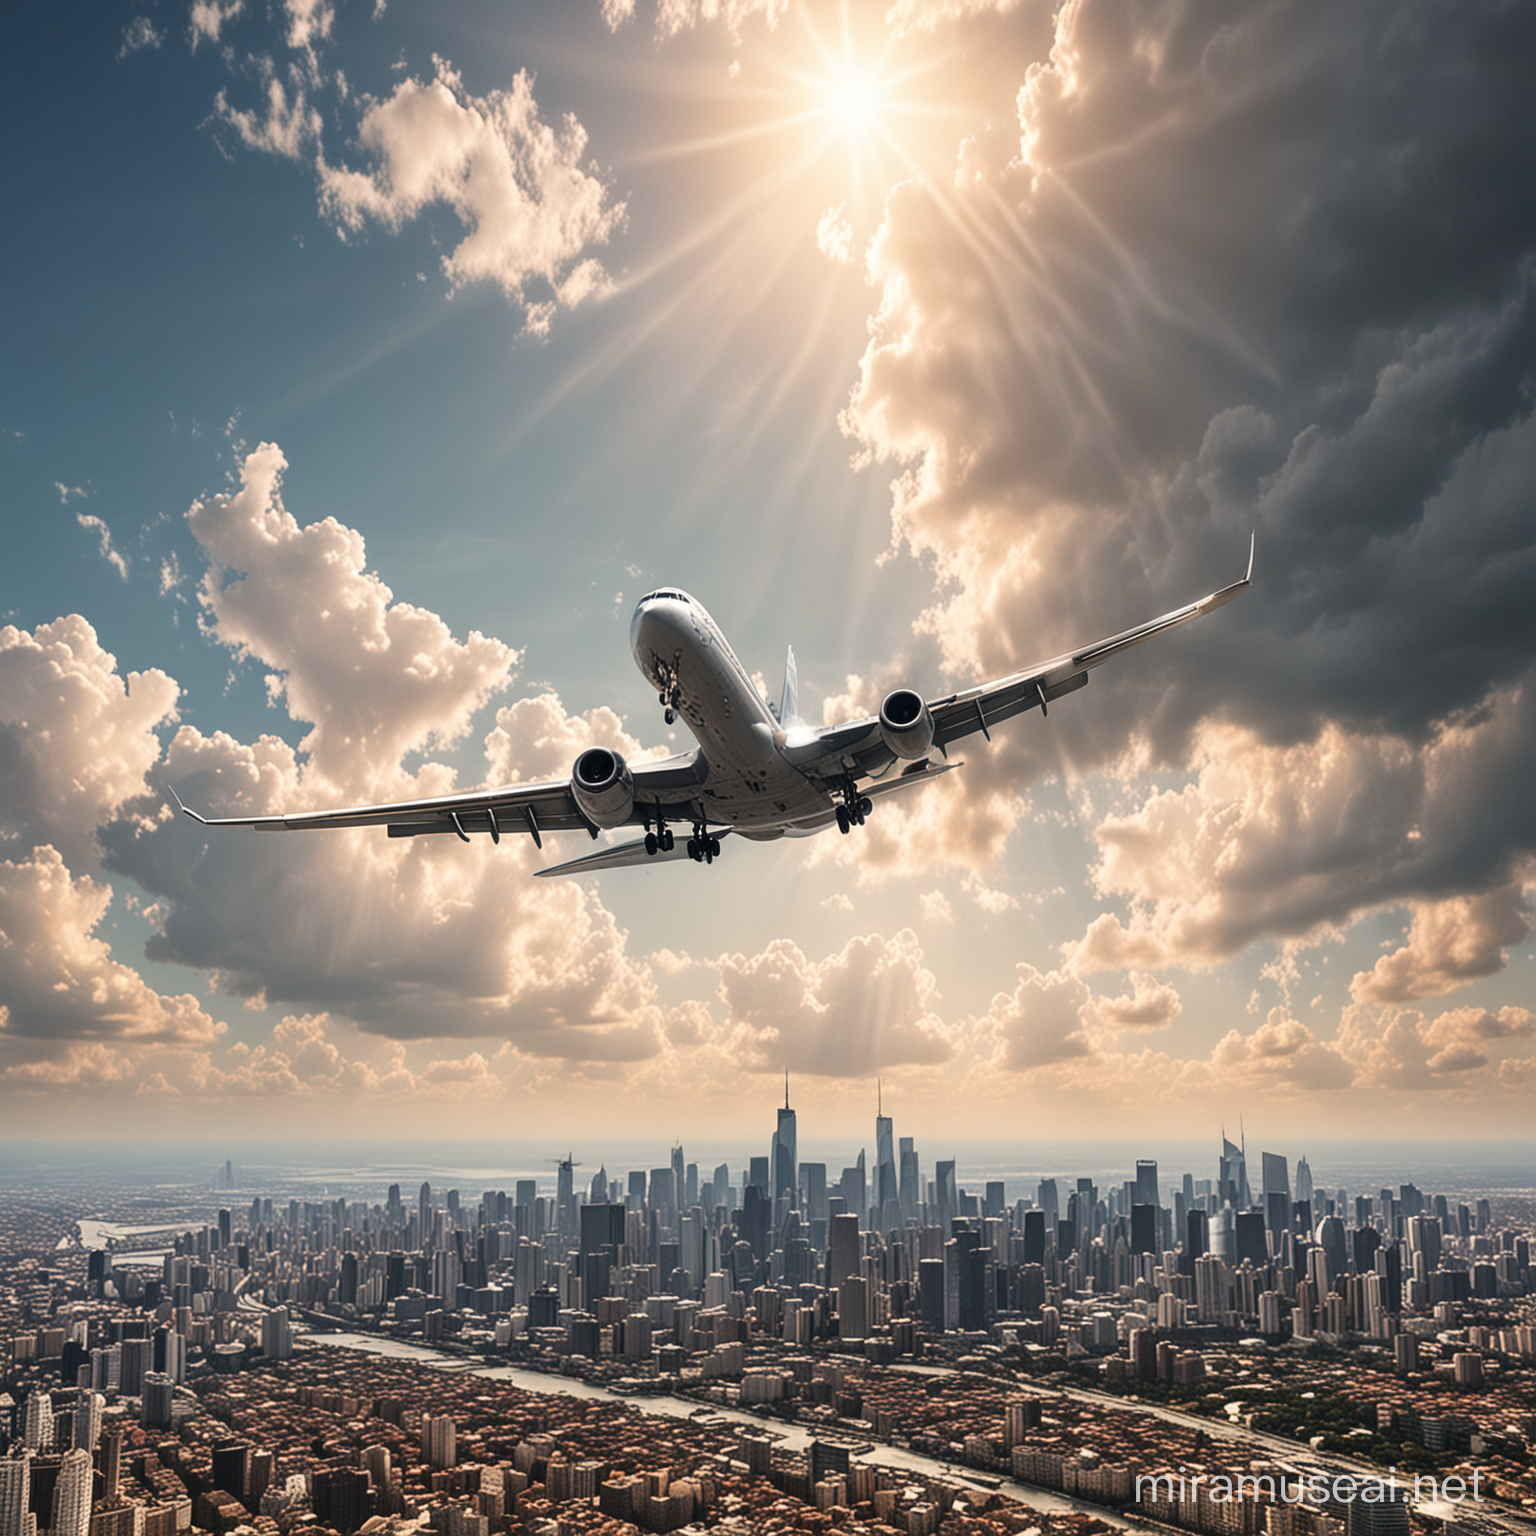 создай реалистичную картинку с полетом самолета над городом и красивым небом